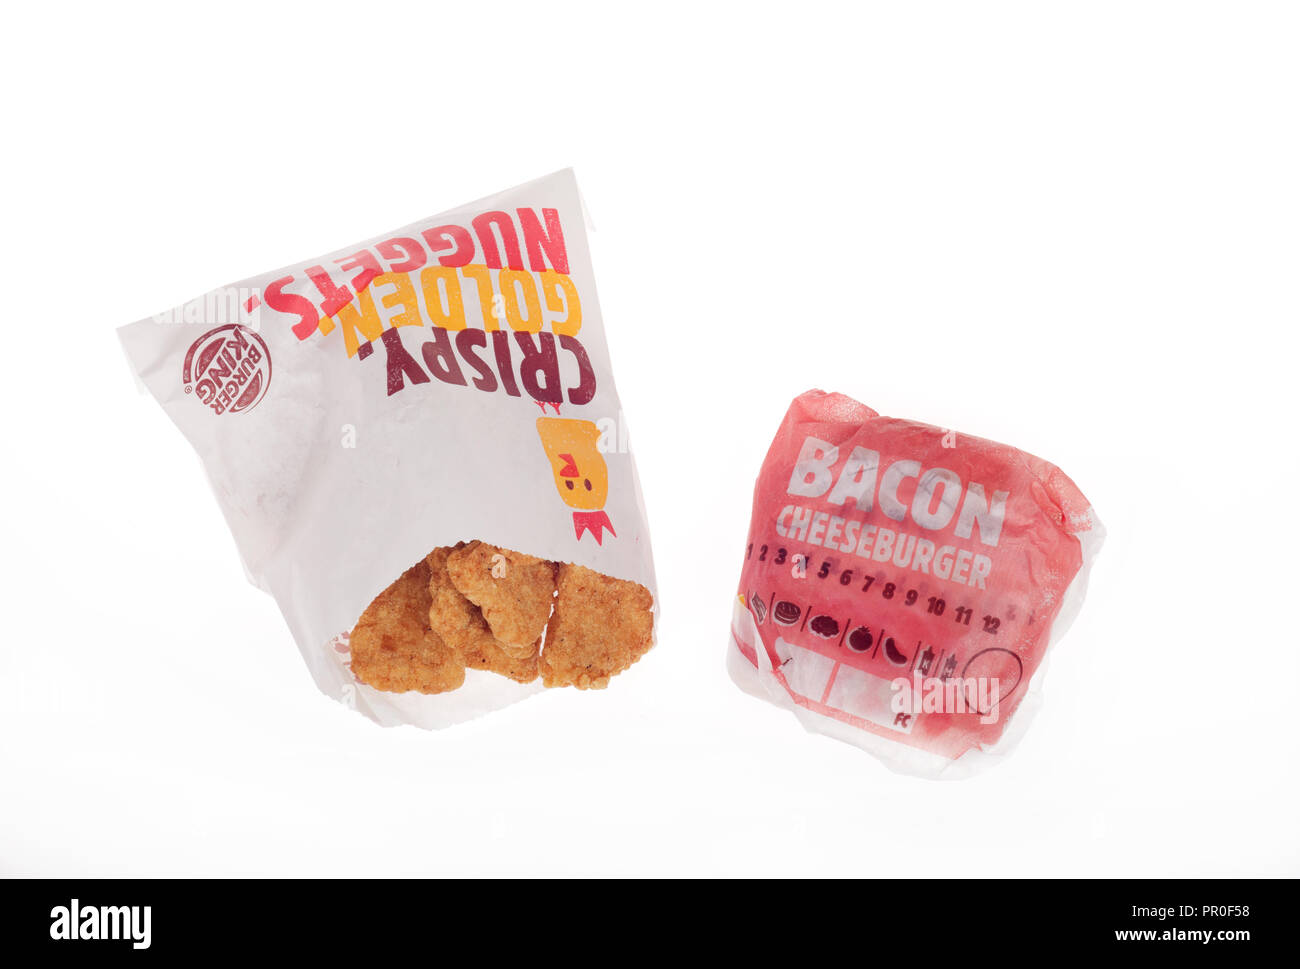 Burger King enveloppé Bacon Cheeseburger et sachet de pépites de poulet Banque D'Images